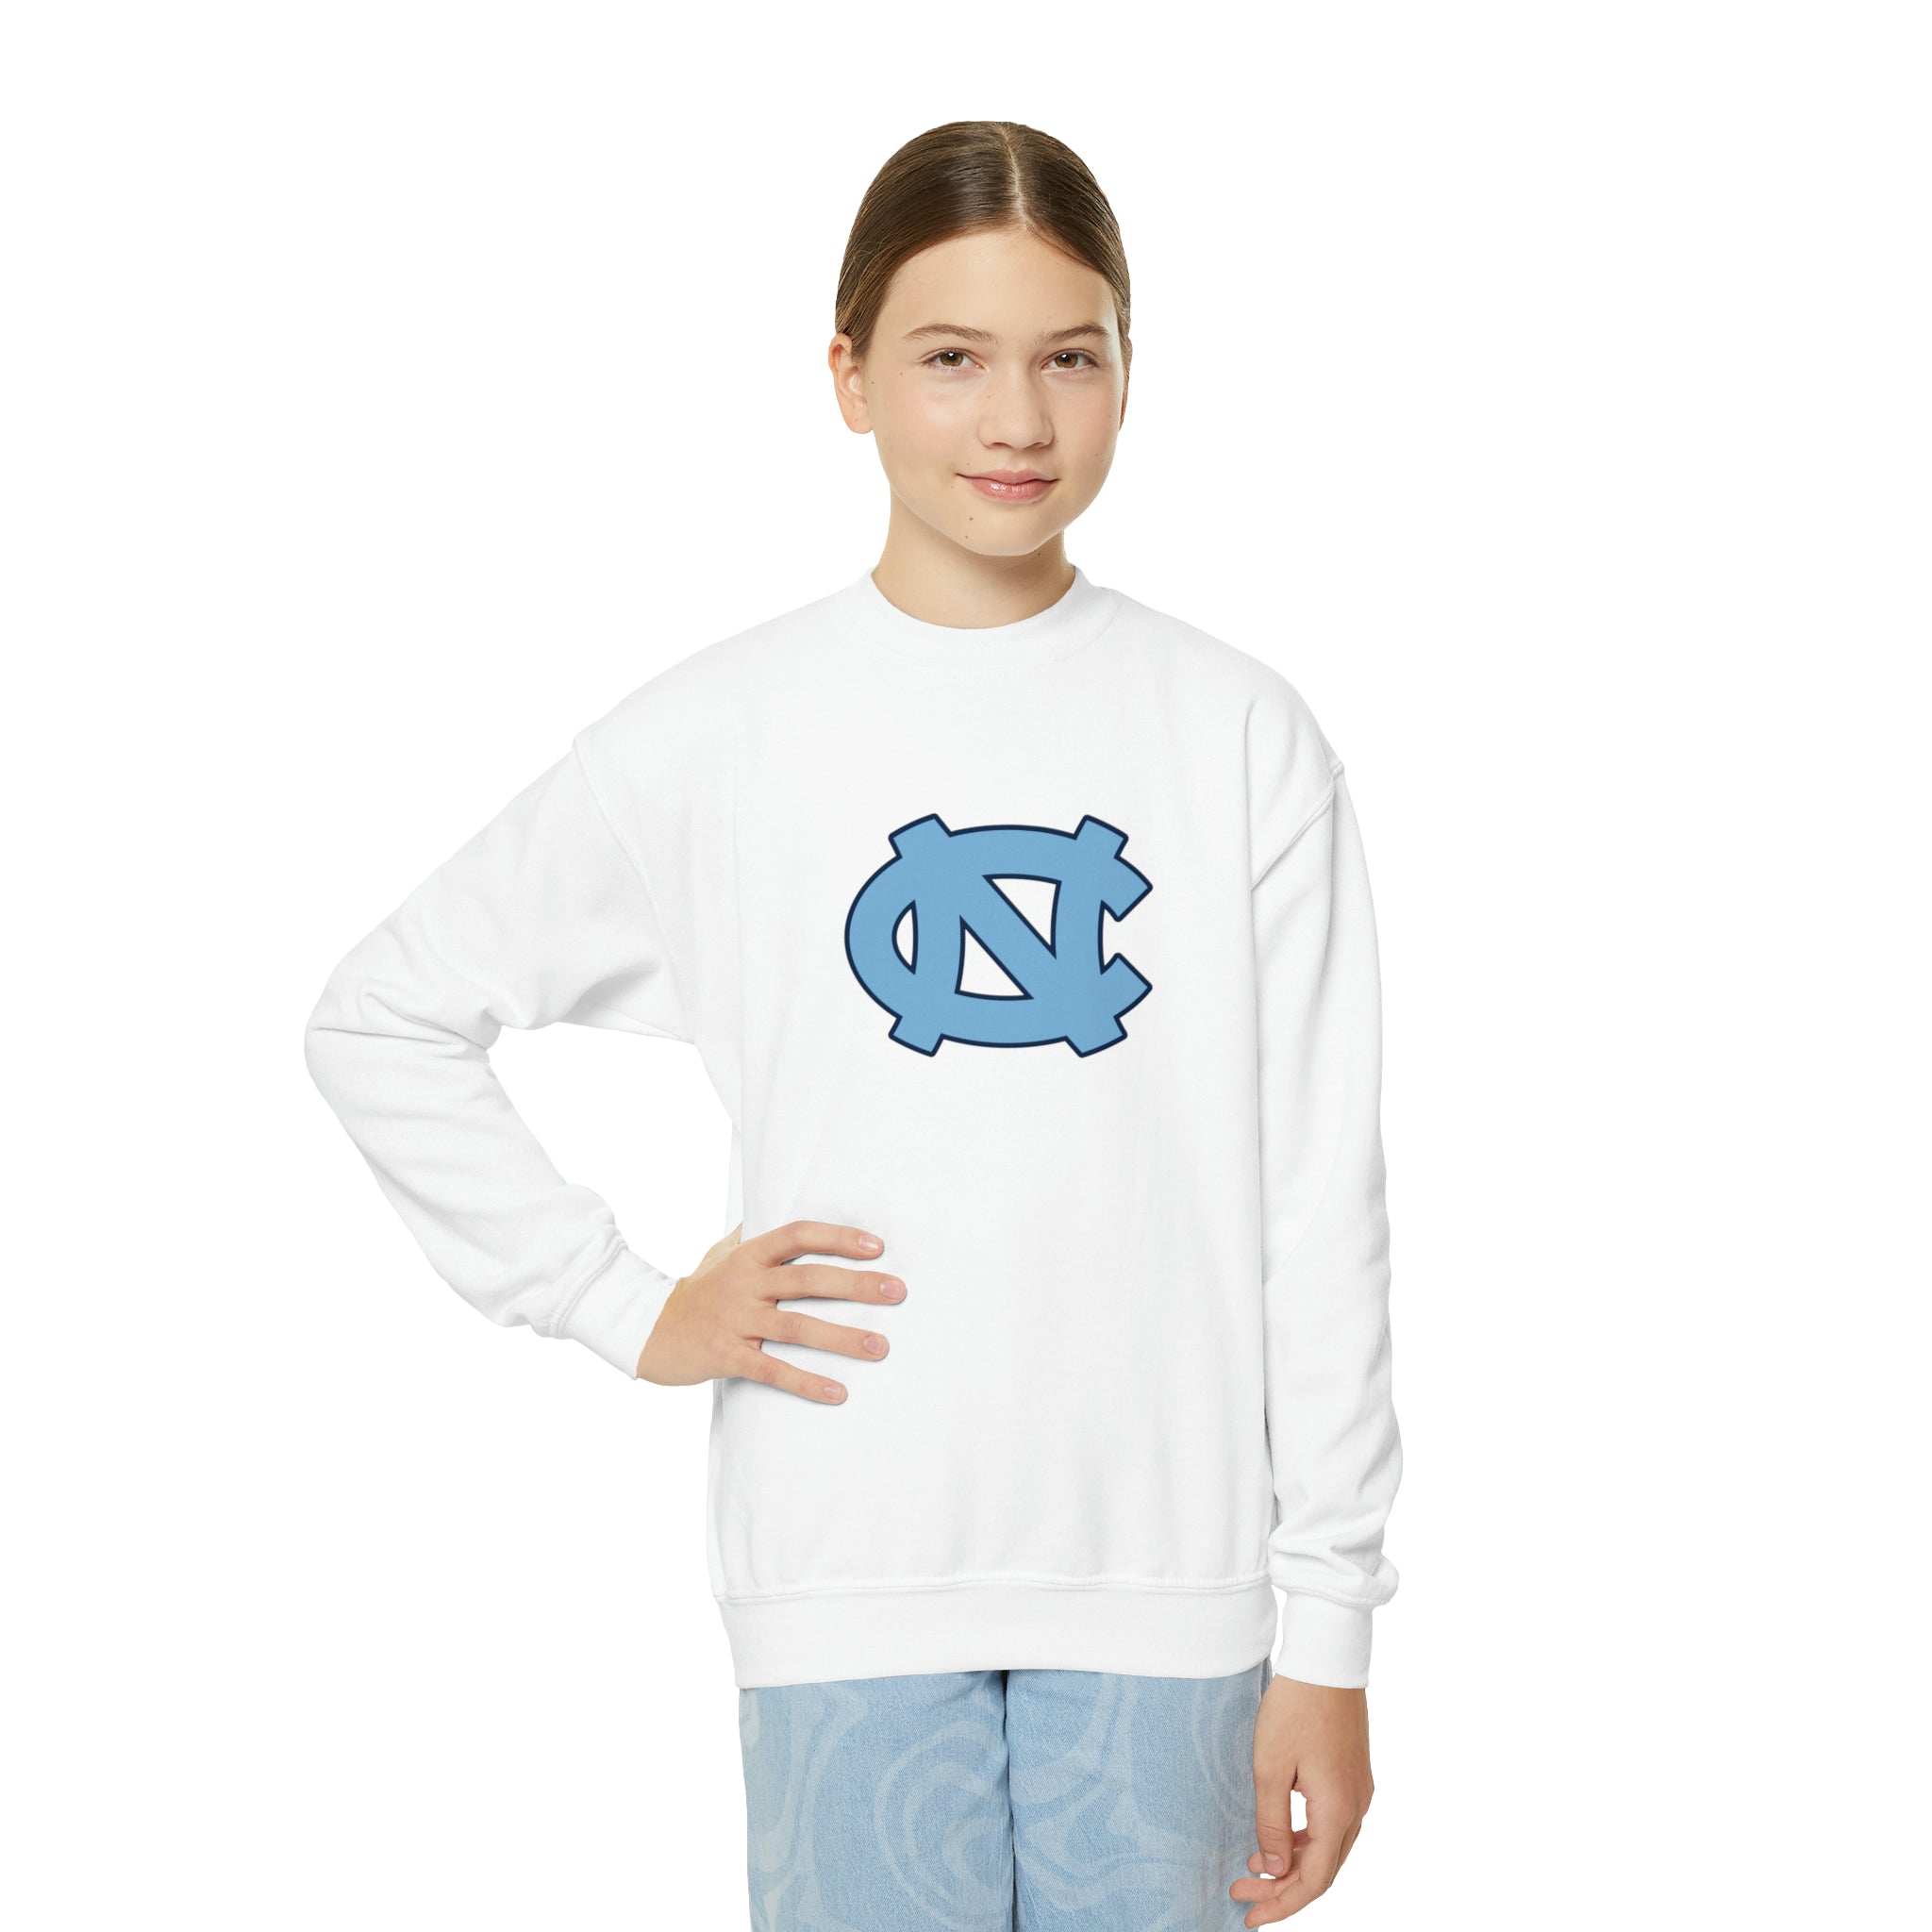 North Carolina Tar Heels Youth Crewneck Sweatshirt